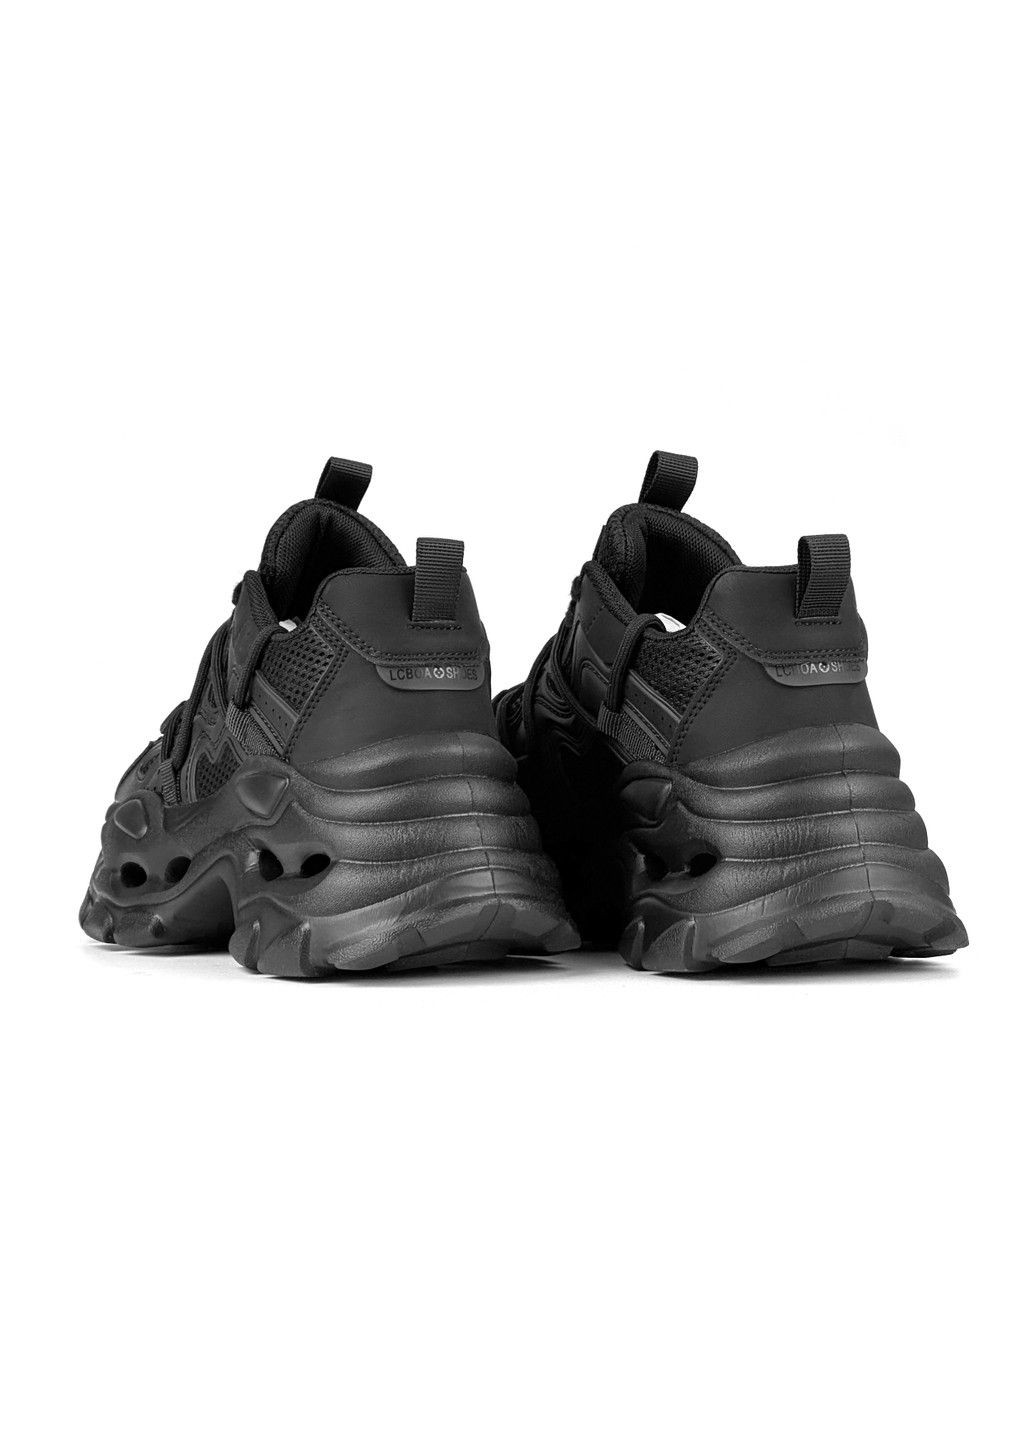 Чорні осінні жіночі кросівки emp Veagia